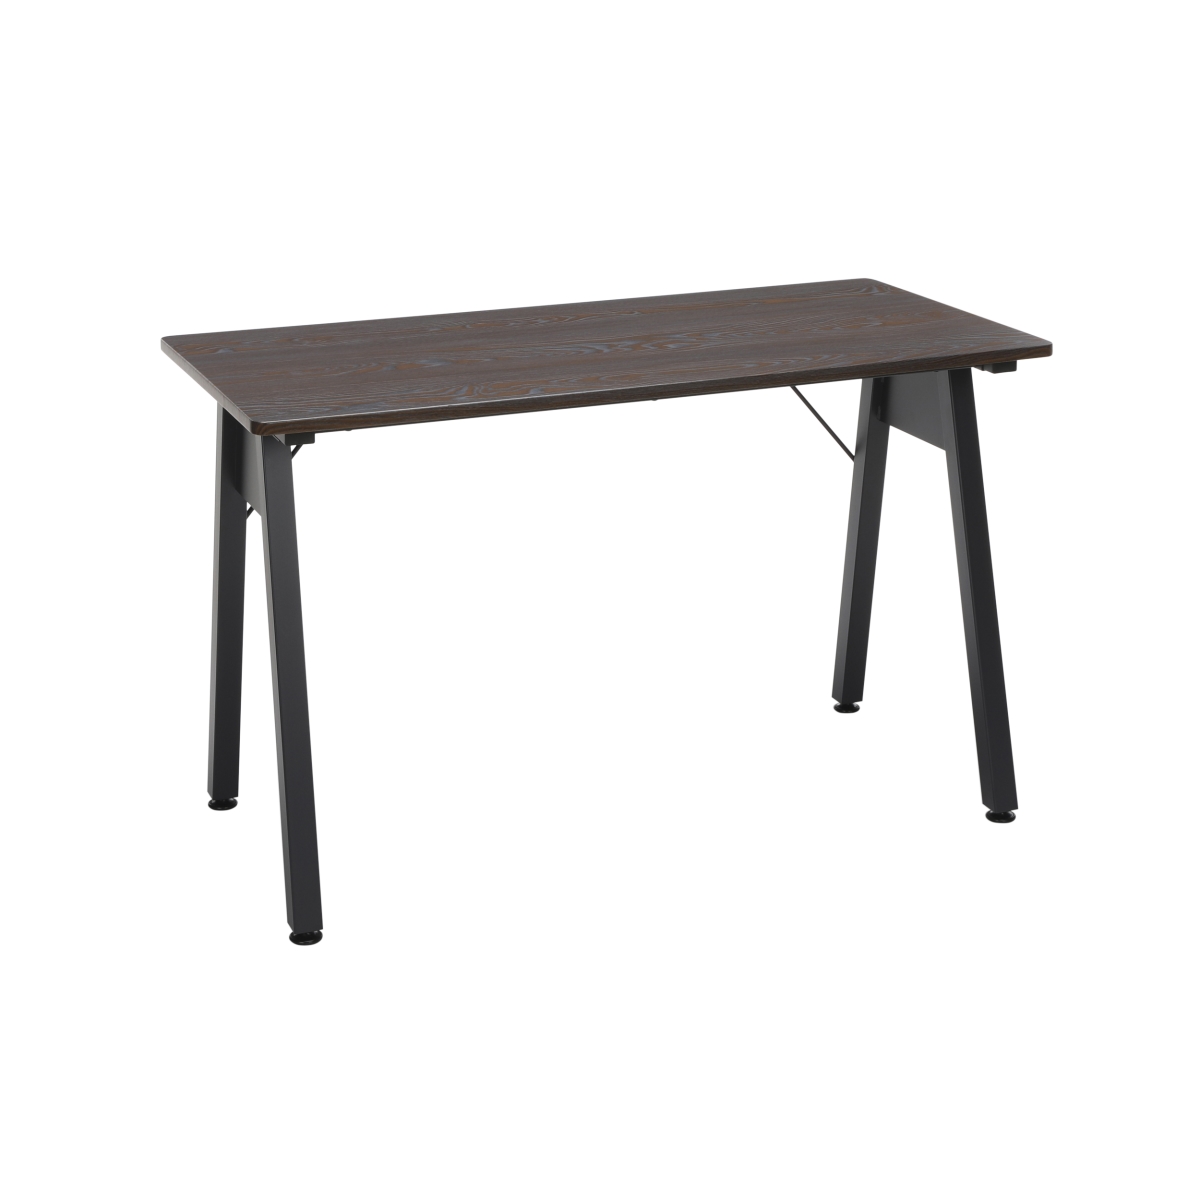 Ess-1050-blk-wen 48 In. Table Desk, Wenge Woodgrain